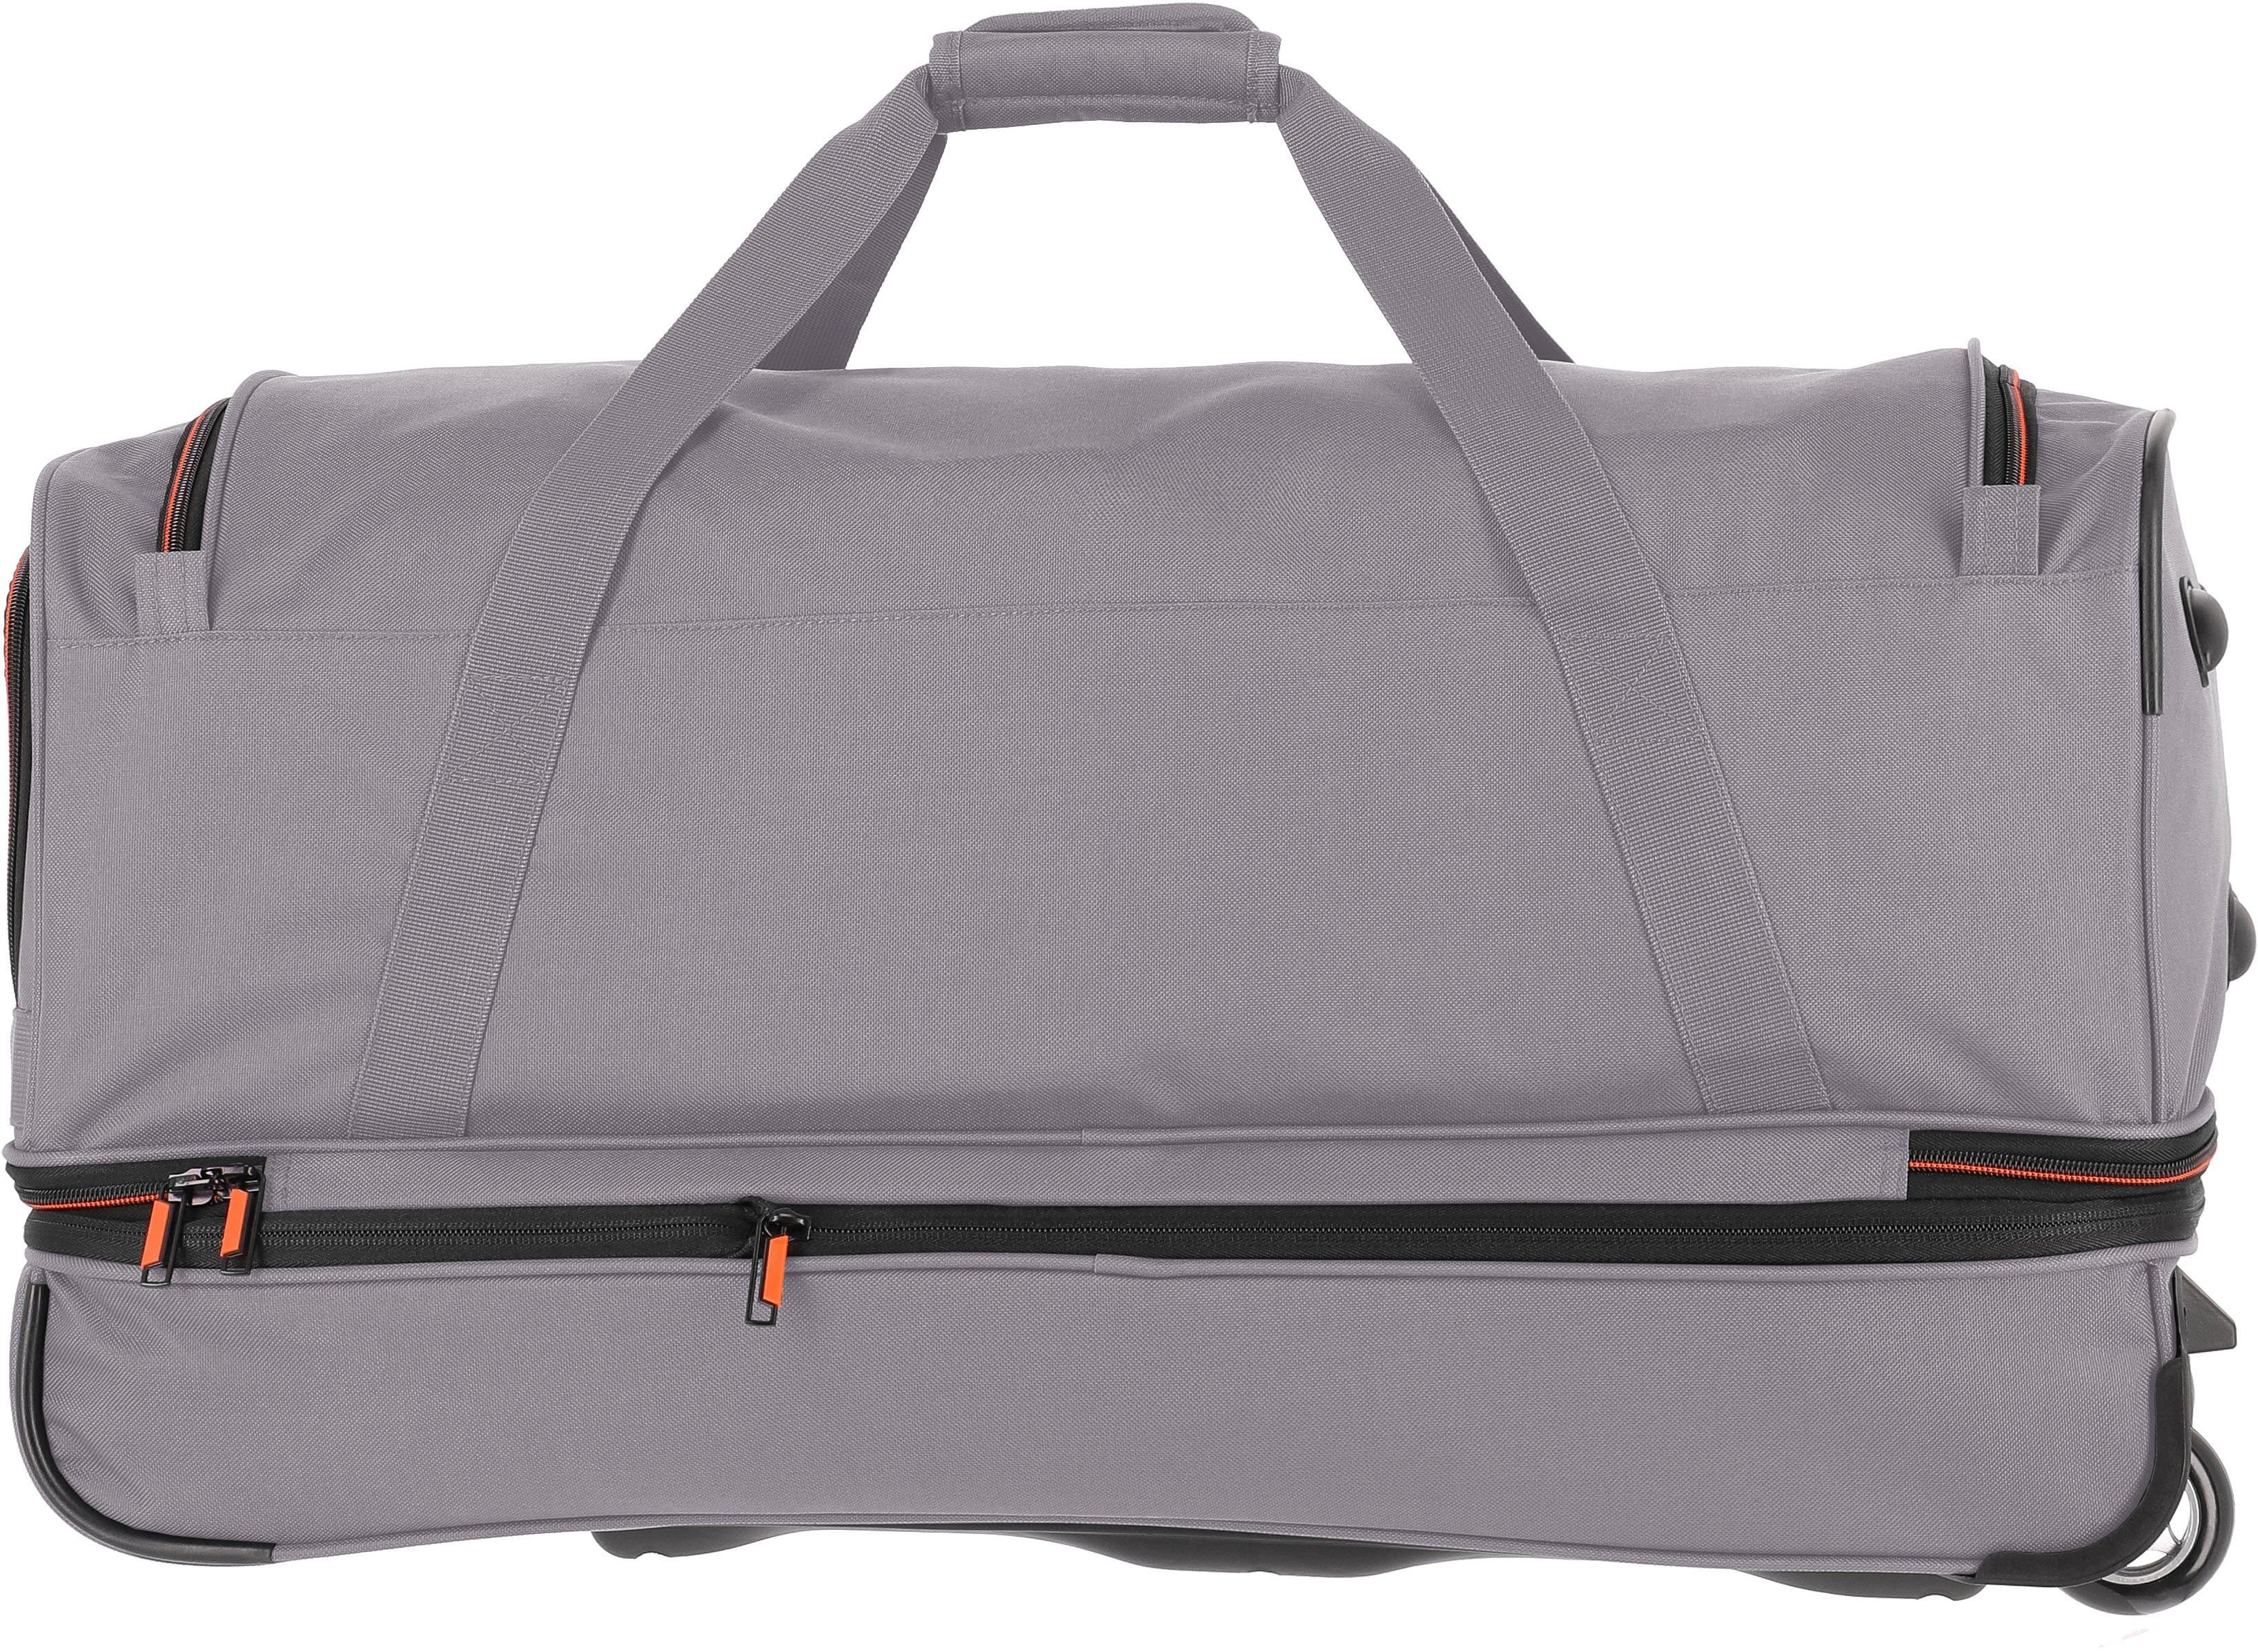 Basics, grau/orange, travelite Trolleyfunktion und 70 Reisetasche cm, Volumenerweiterung mit